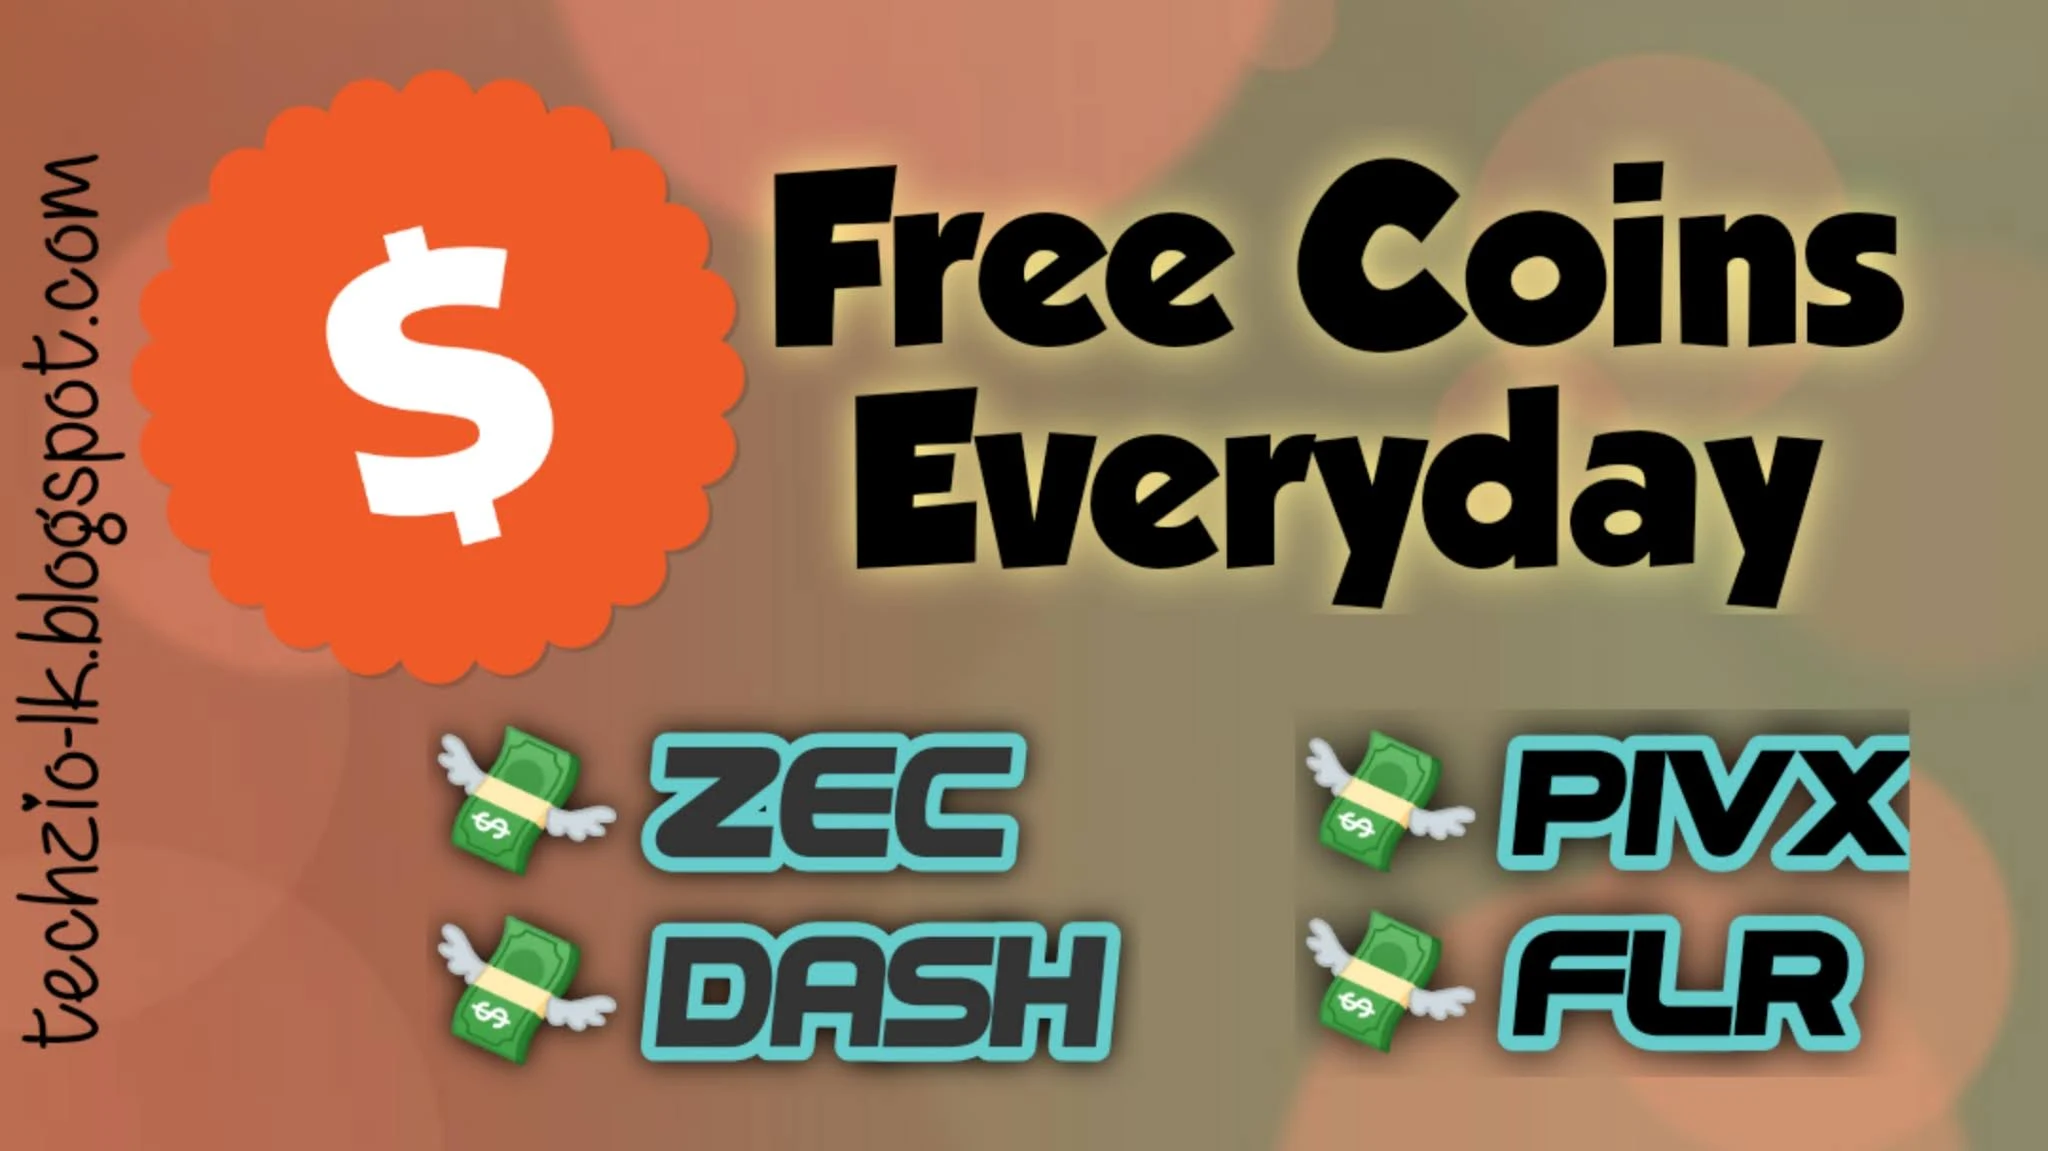 Free coins everyday pipeflare pivx dash zec flv coinbase sinhala crypto bitcoin sinhalen cloud mining